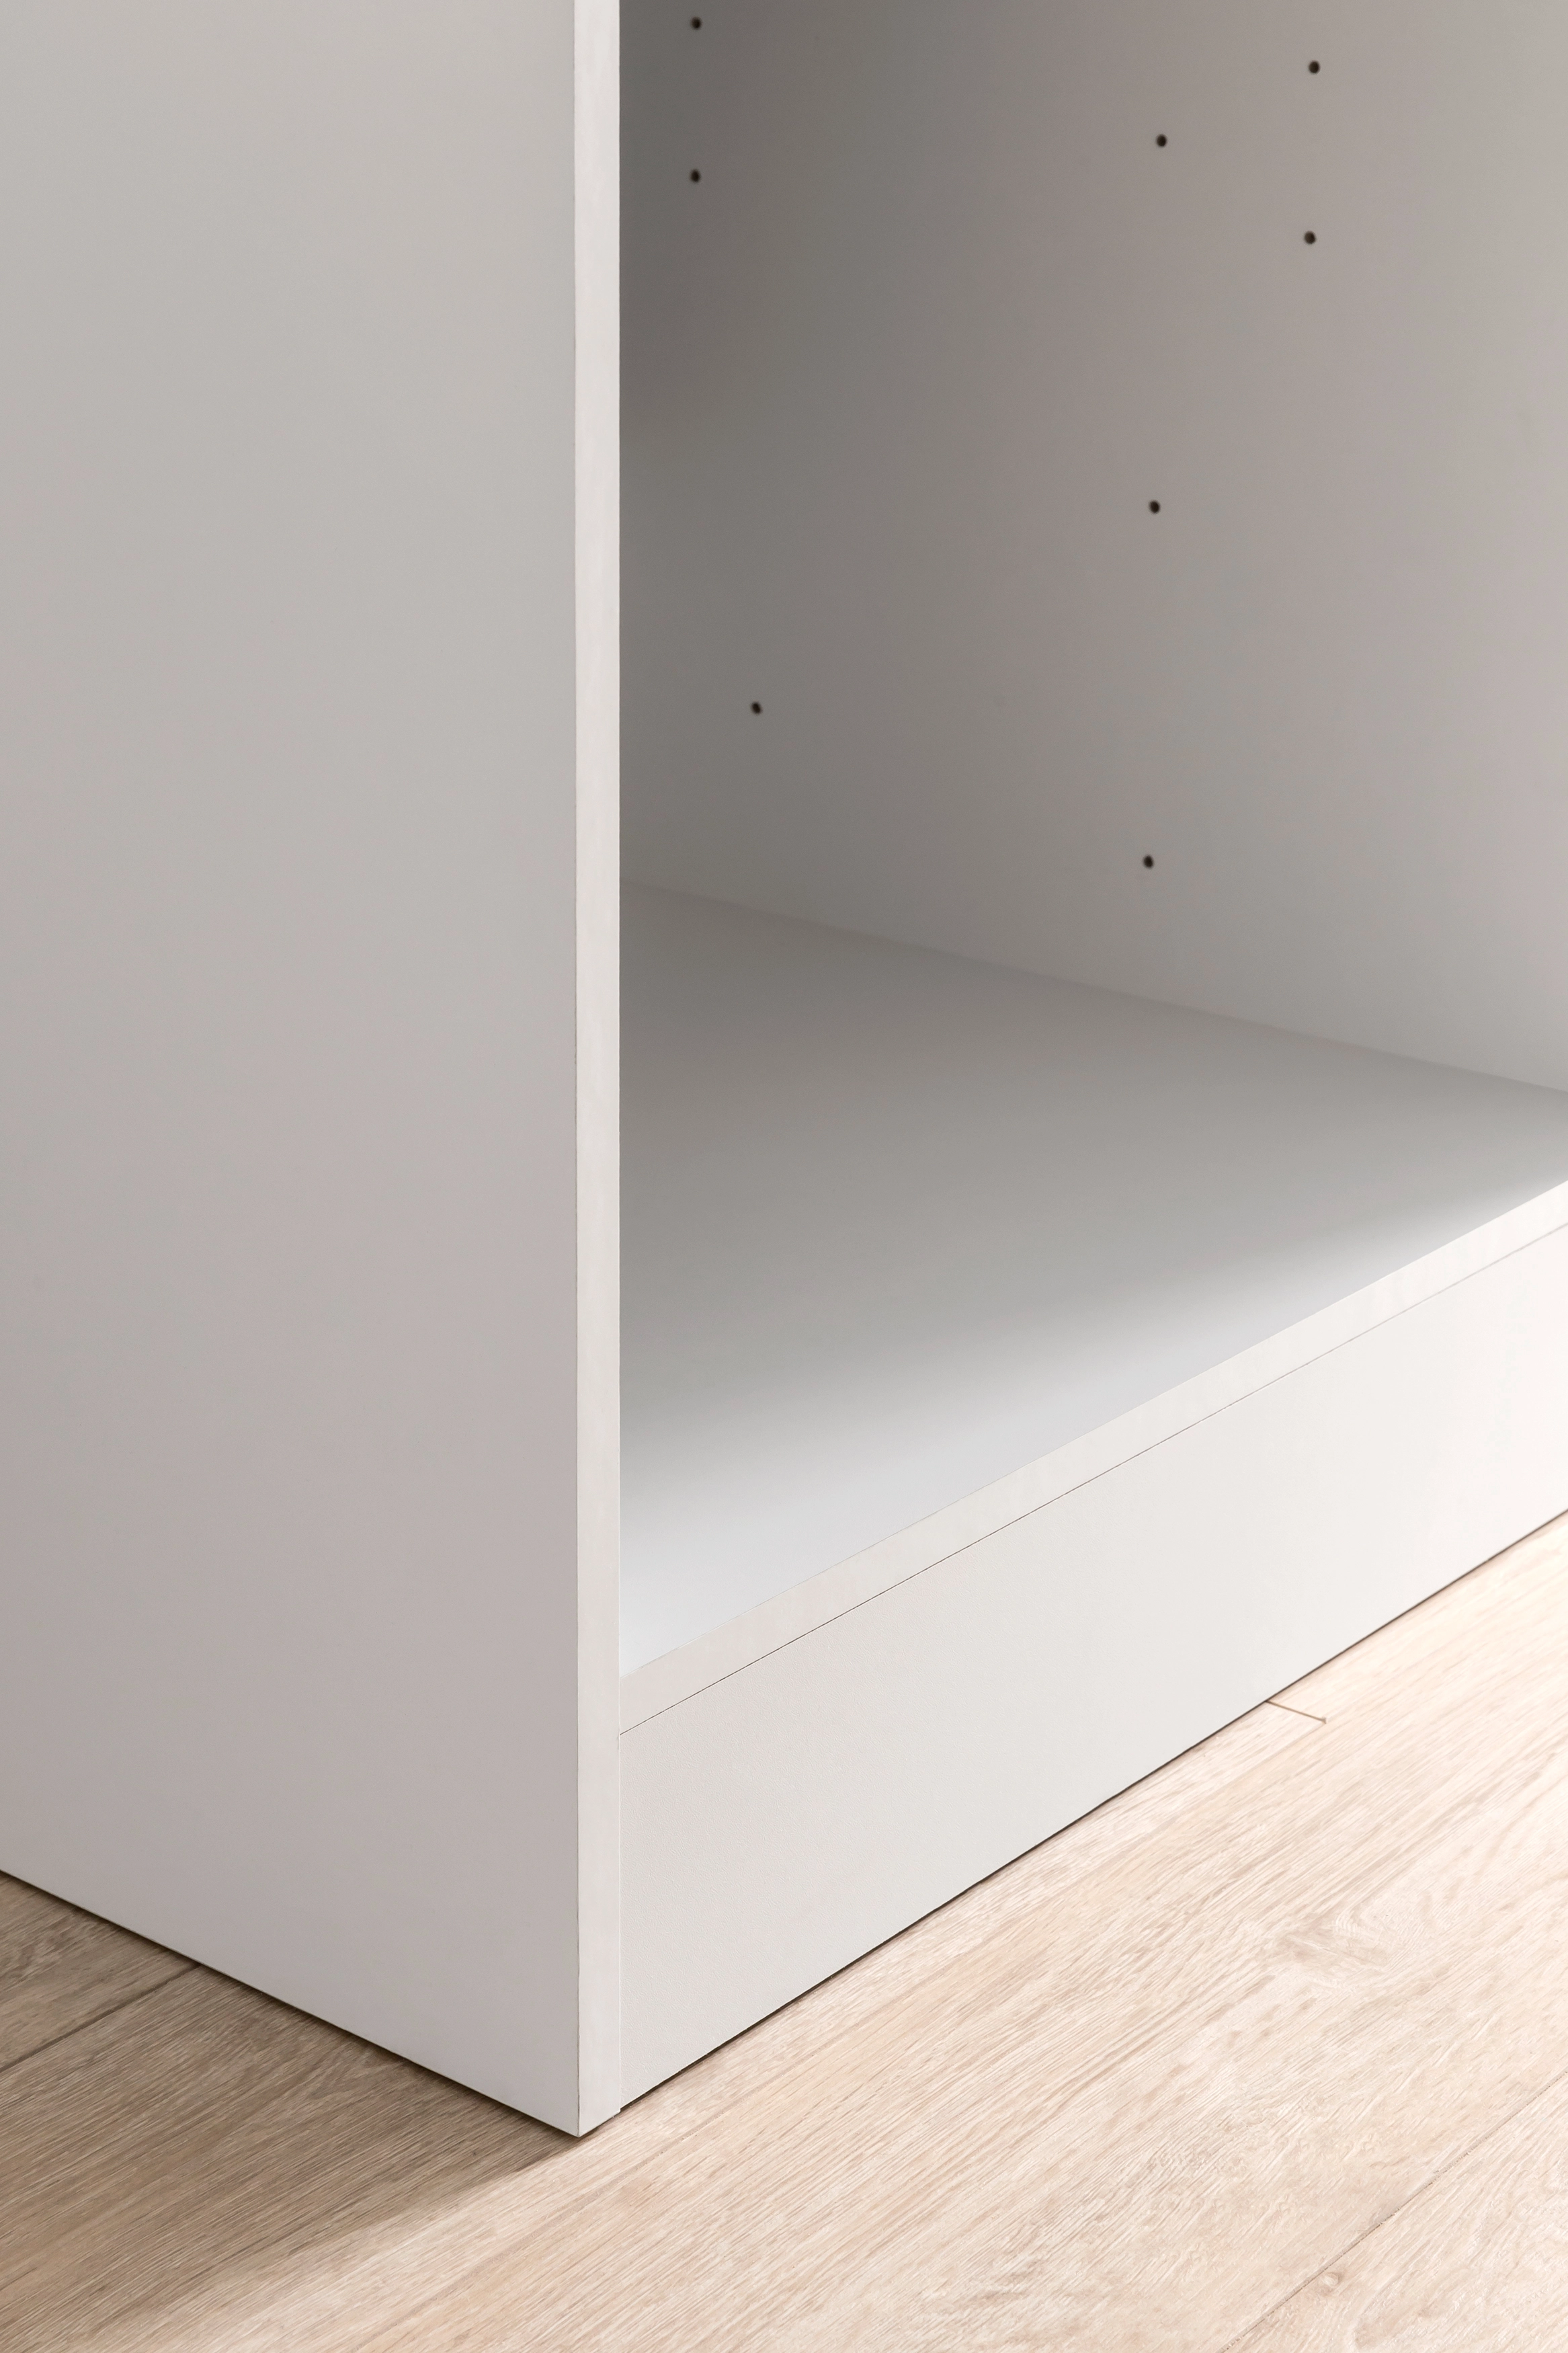 Held Möbel Apothekerschrank Mailand 30 cm Hochglanz Weiß/Weiß kaufen bei OBI